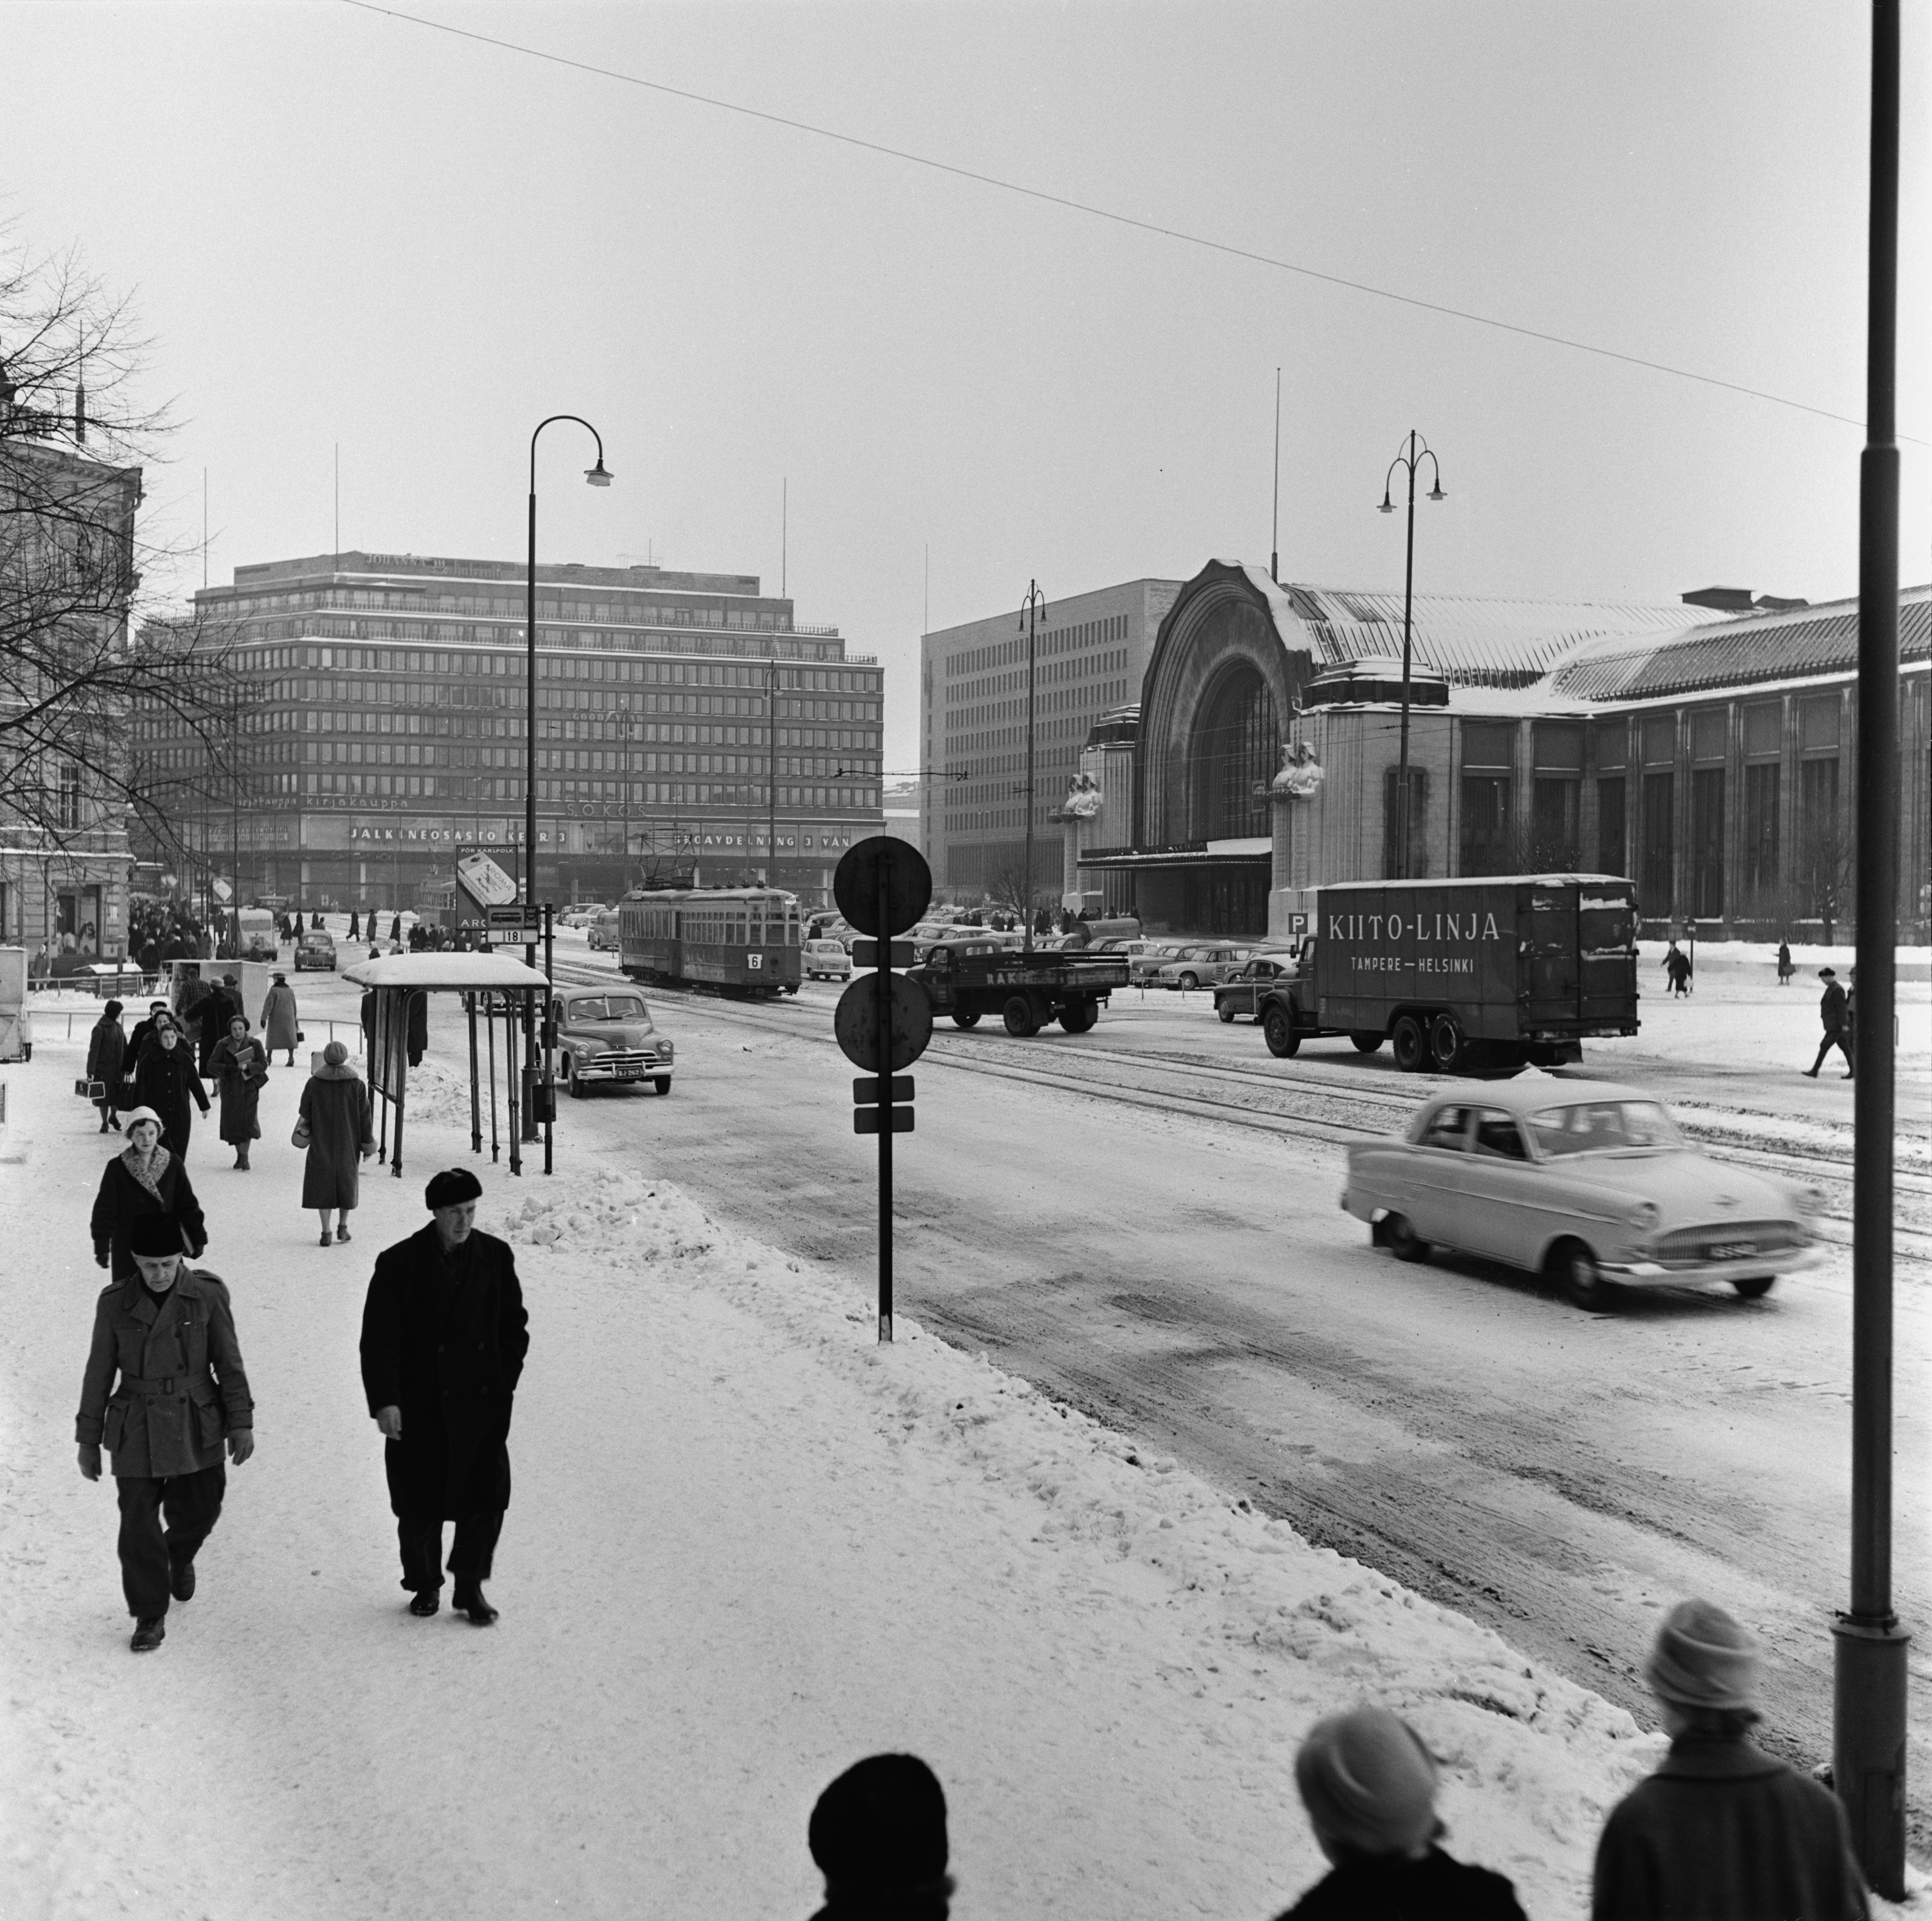 Jalankulkijoita ja liikennettä Kaivokadulla Ateuneumin edustalla. Taustalla Sokoksen tavaratalo, Postitalo ja Rautatieasema.